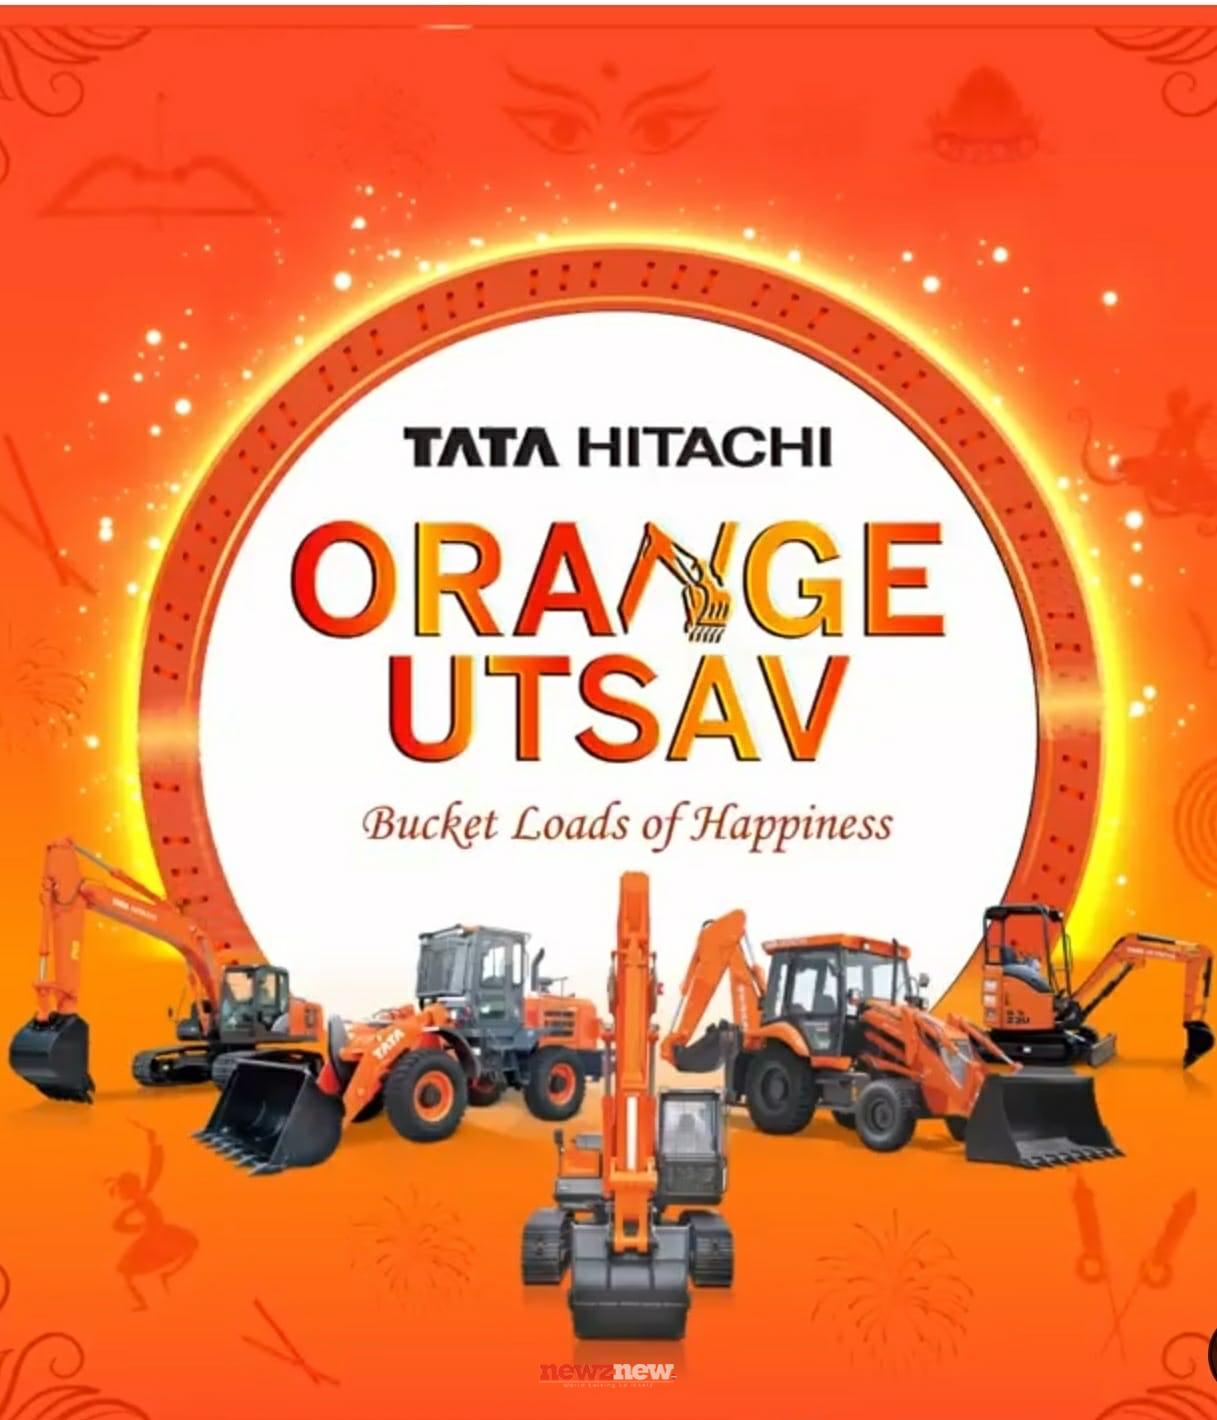 Tata Hitachi announces Orange Utsav